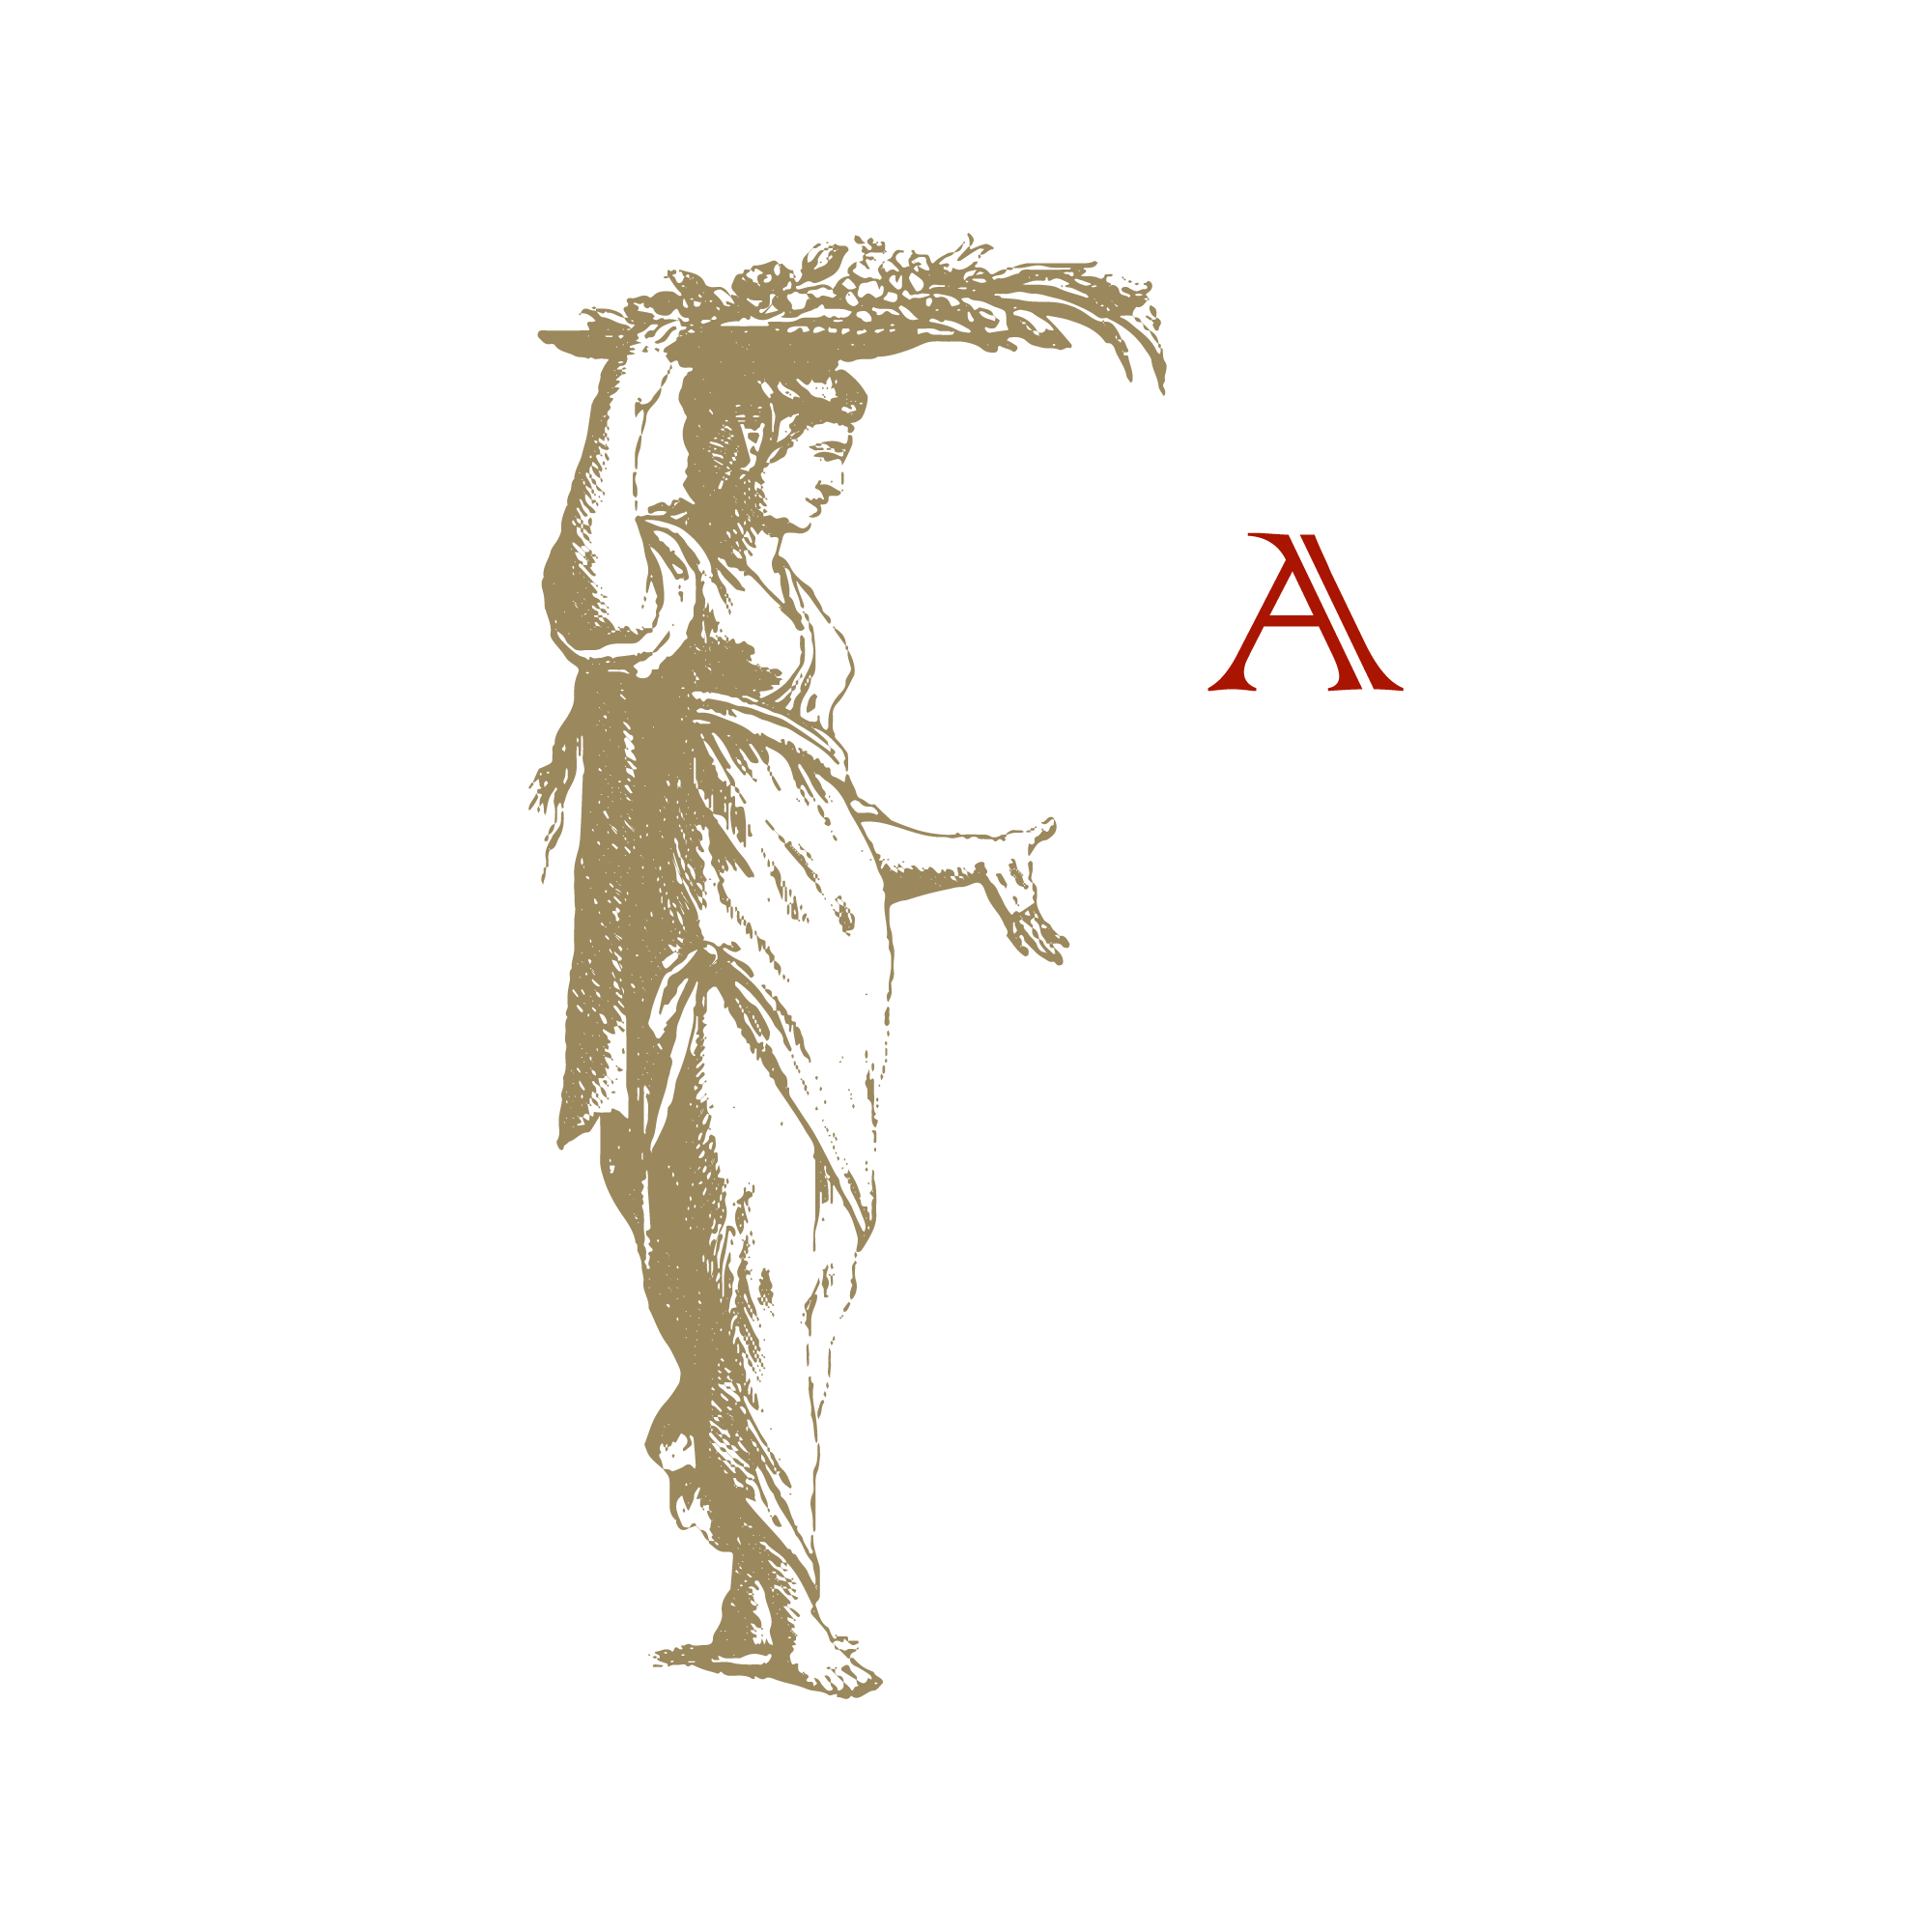 antonio-scollo-agora-edizioni-design-©-diego-cinquegrana-the-golden-torch-aimaproject-sa-logo-nuovo